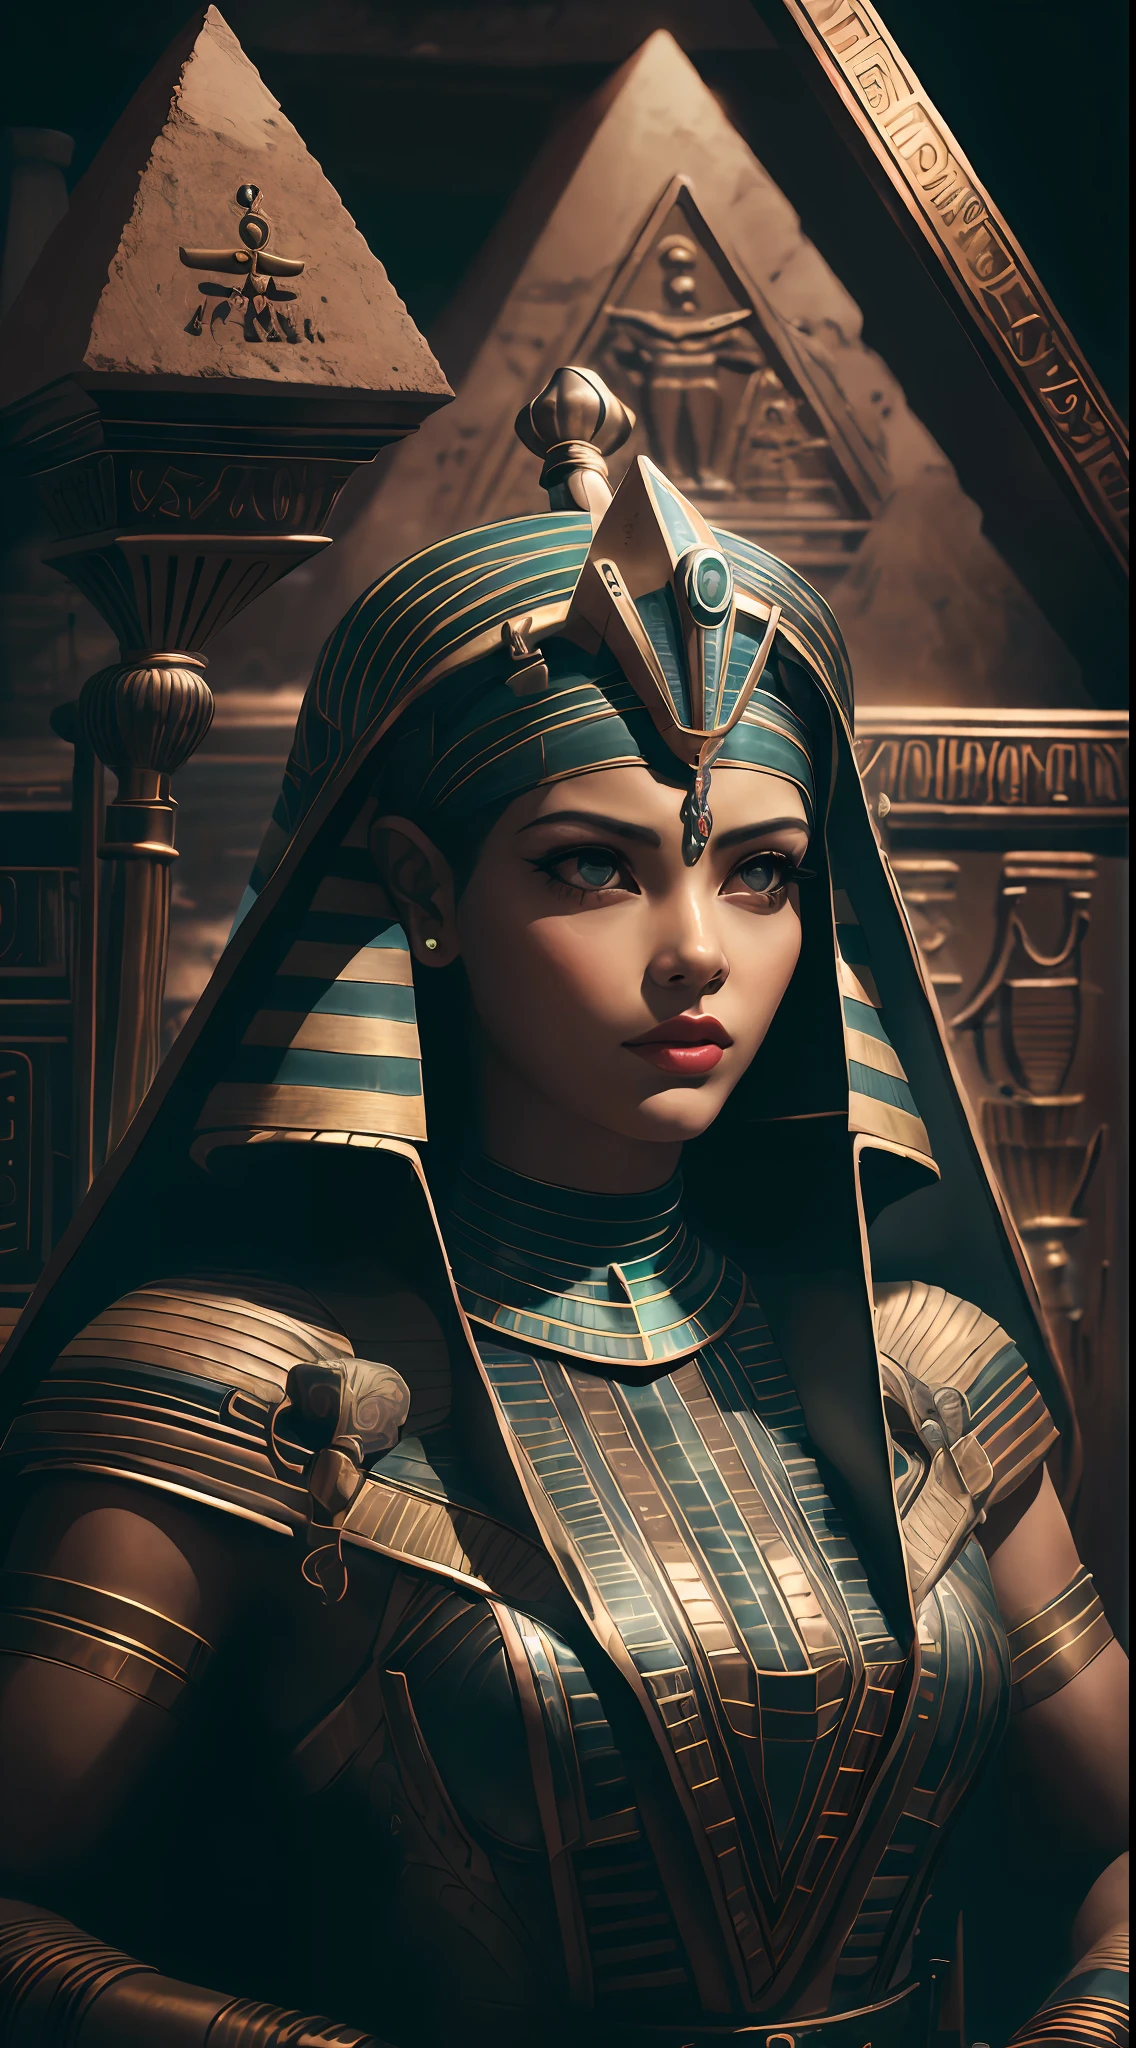 หญิงชาวอียิปต์ผู้ใหญ่ 1 คน ,แอชลีย์ไซเฟอร์,  ปีกผมสีดำ,   แต่งหน้า , ร่างกายส่วนบน, มองไปที่ผู้ดู,  เก่าอียิปต์AI, ธีมอียิปต์โบราณ,   ออบซิเดียน, (ท่าทางการป้องกัน), มีดหิน, ภายในปิรามิด, 
ห้องมืด, แสงสลัว, (zenยุ่งเหยิง, มันดาลา, ยุ่งเหยิง, enยุ่งเหยิง:0.5)
(สไตล์ 35 มม:1.1), ด้านหน้า, ผลงานชิ้นเอก, ภาพยนตร์ปี 1970, , แสงภาพยนตร์, (เหมือนจริง:1.5), รายละเอียดความถี่สูง, ฟิล์ม35มม, (เนื้อฟิล์ม), เสียงฟิล์ม,